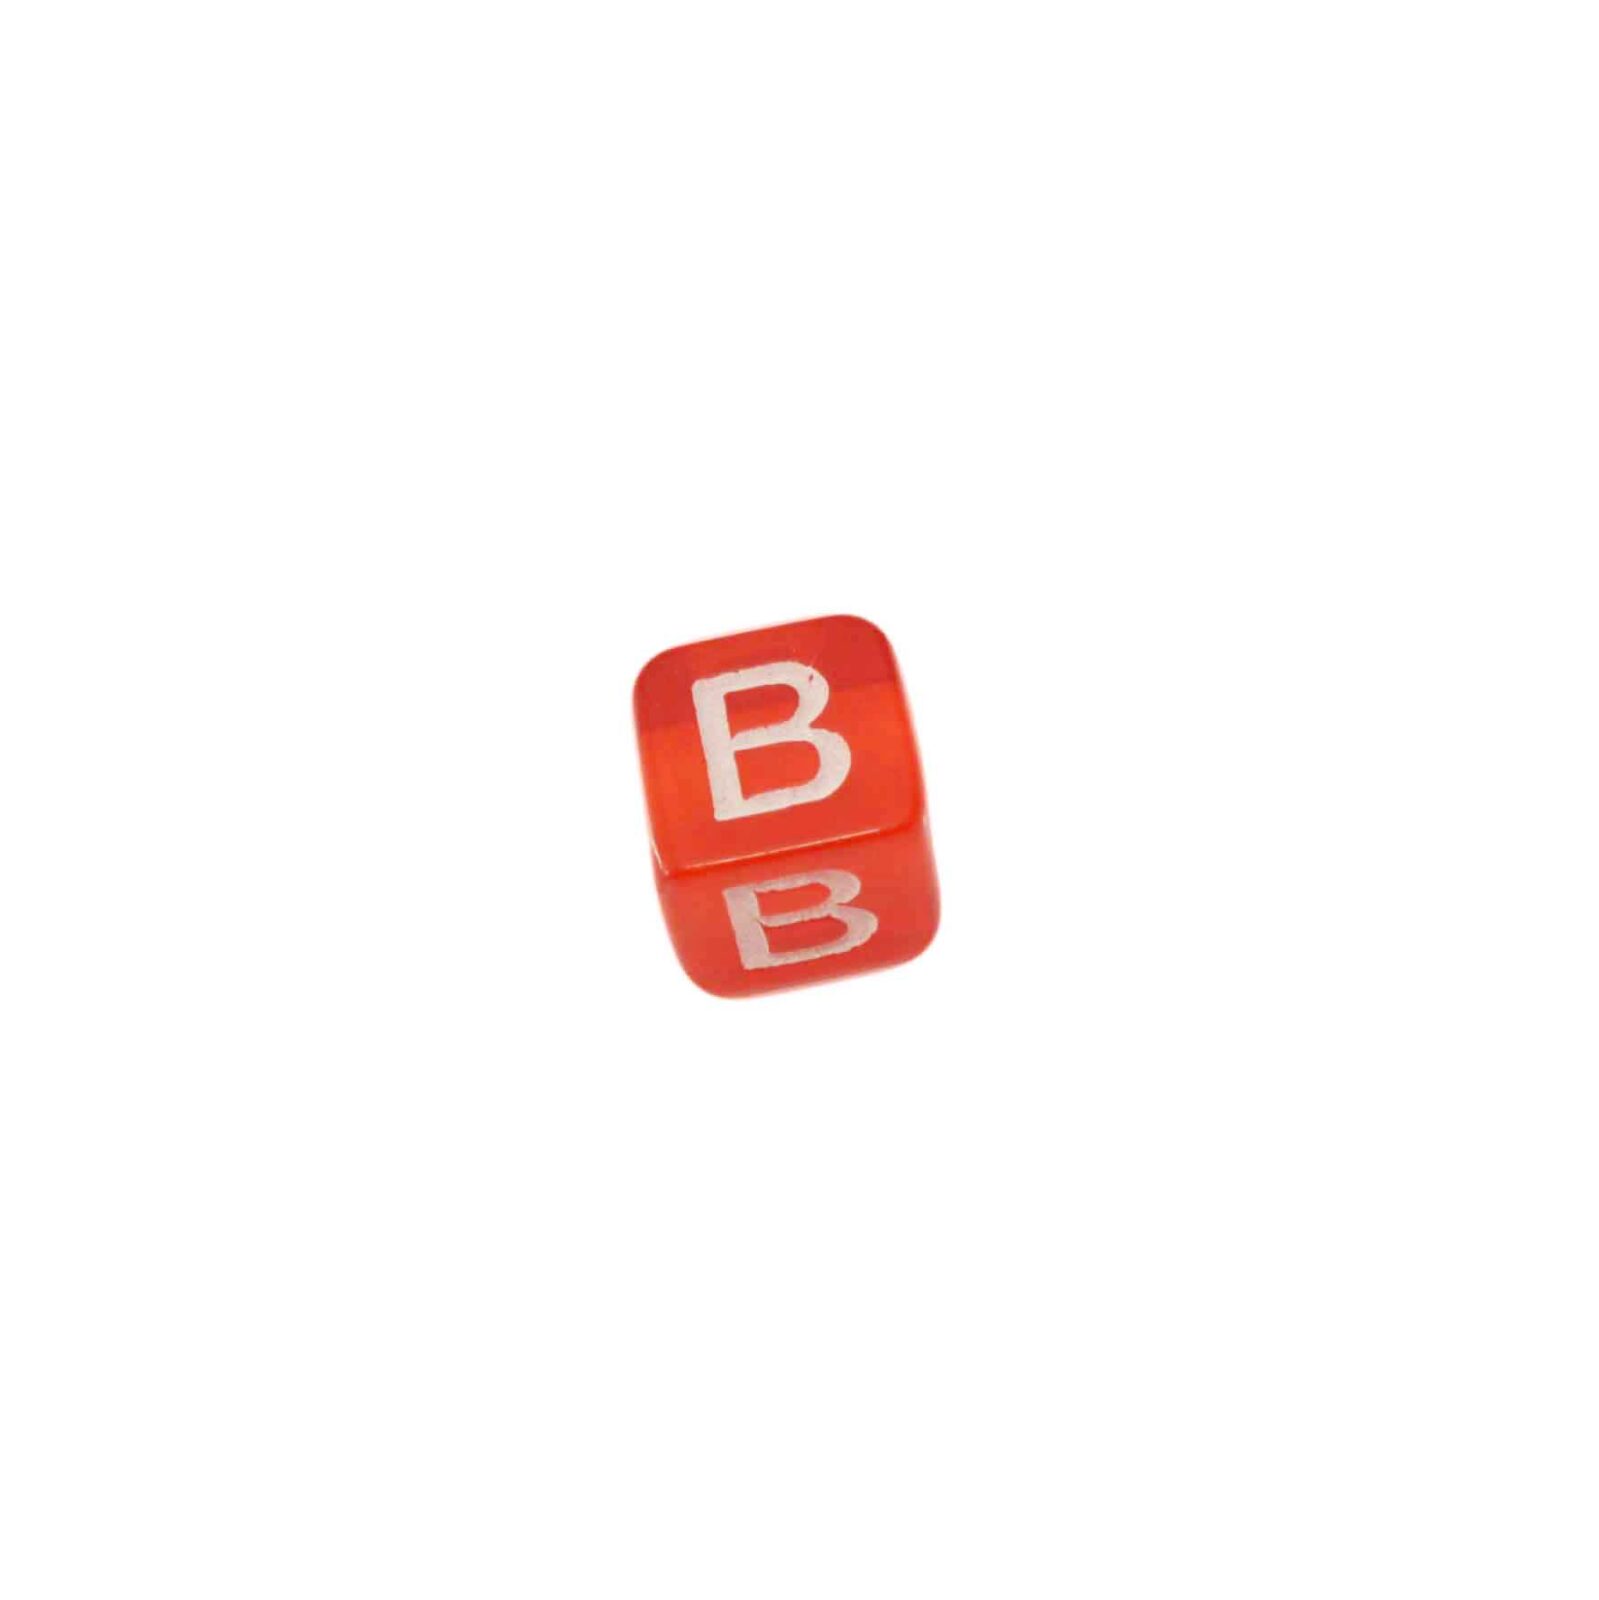 Rode letterkraal B